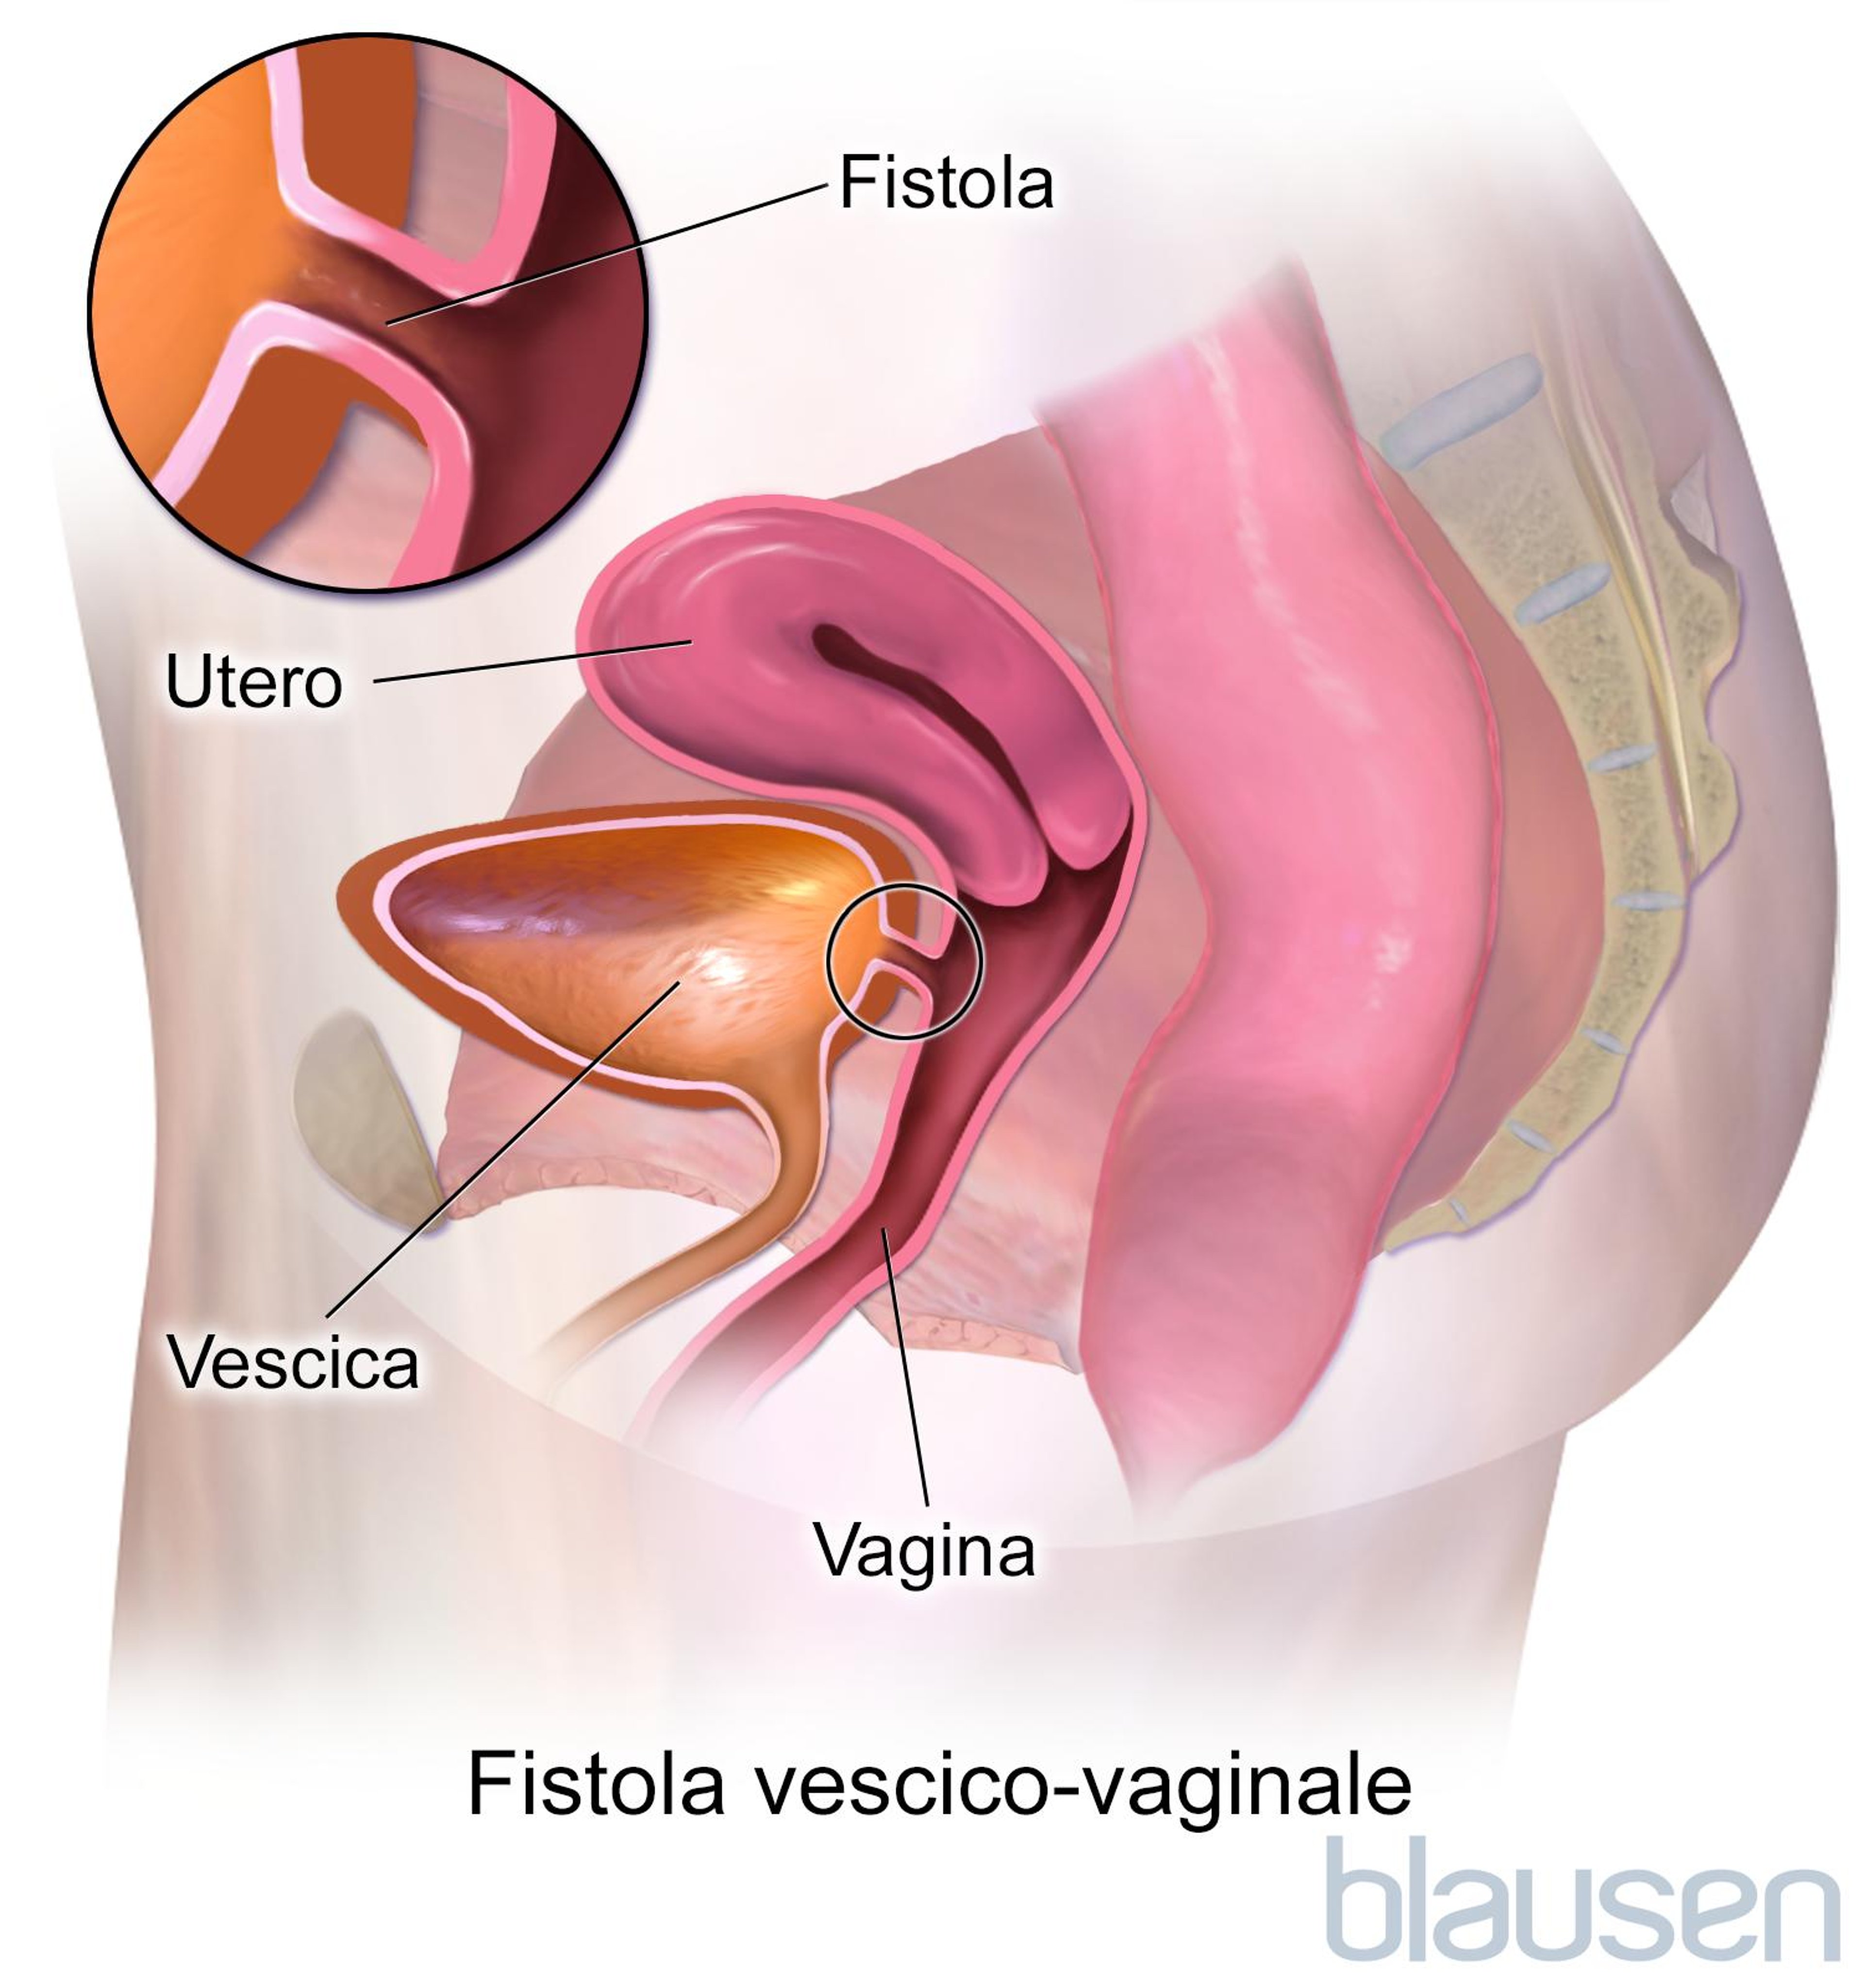 Fistola vescico-vaginale